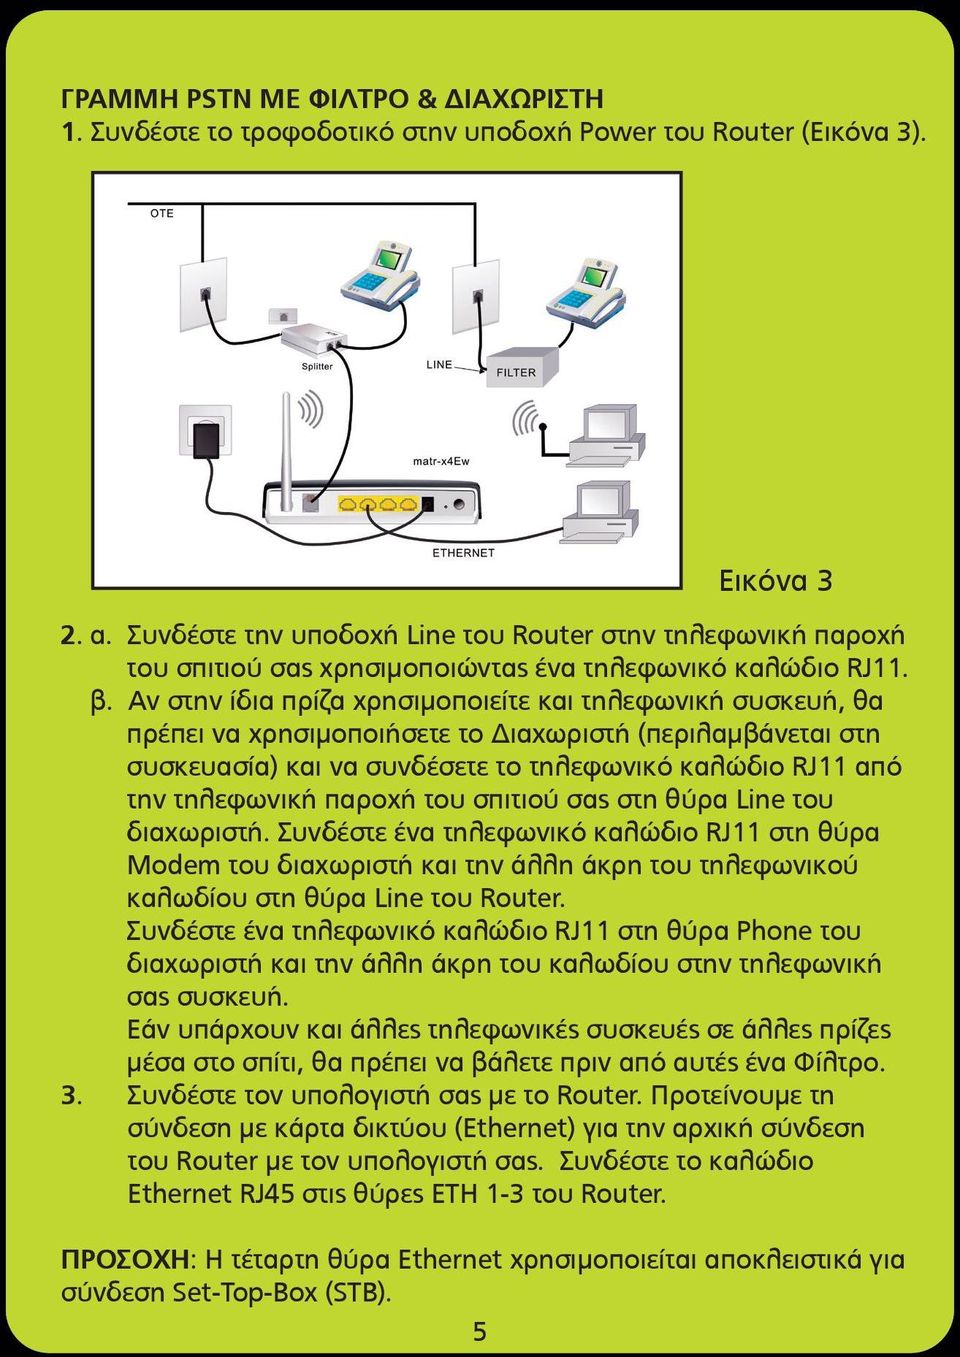 Αν στην ίδια πρίζα χρησιµοποιείτε και τηλεφωνική συσκευή, θα πρέπει να χρησιµοποιήσετε το Διαχωριστή (περιλαµβάνεται στη συσκευασία) και να συνδέσετε το τηλεφωνικό καλώδιο RJ11 από την τηλεφωνική